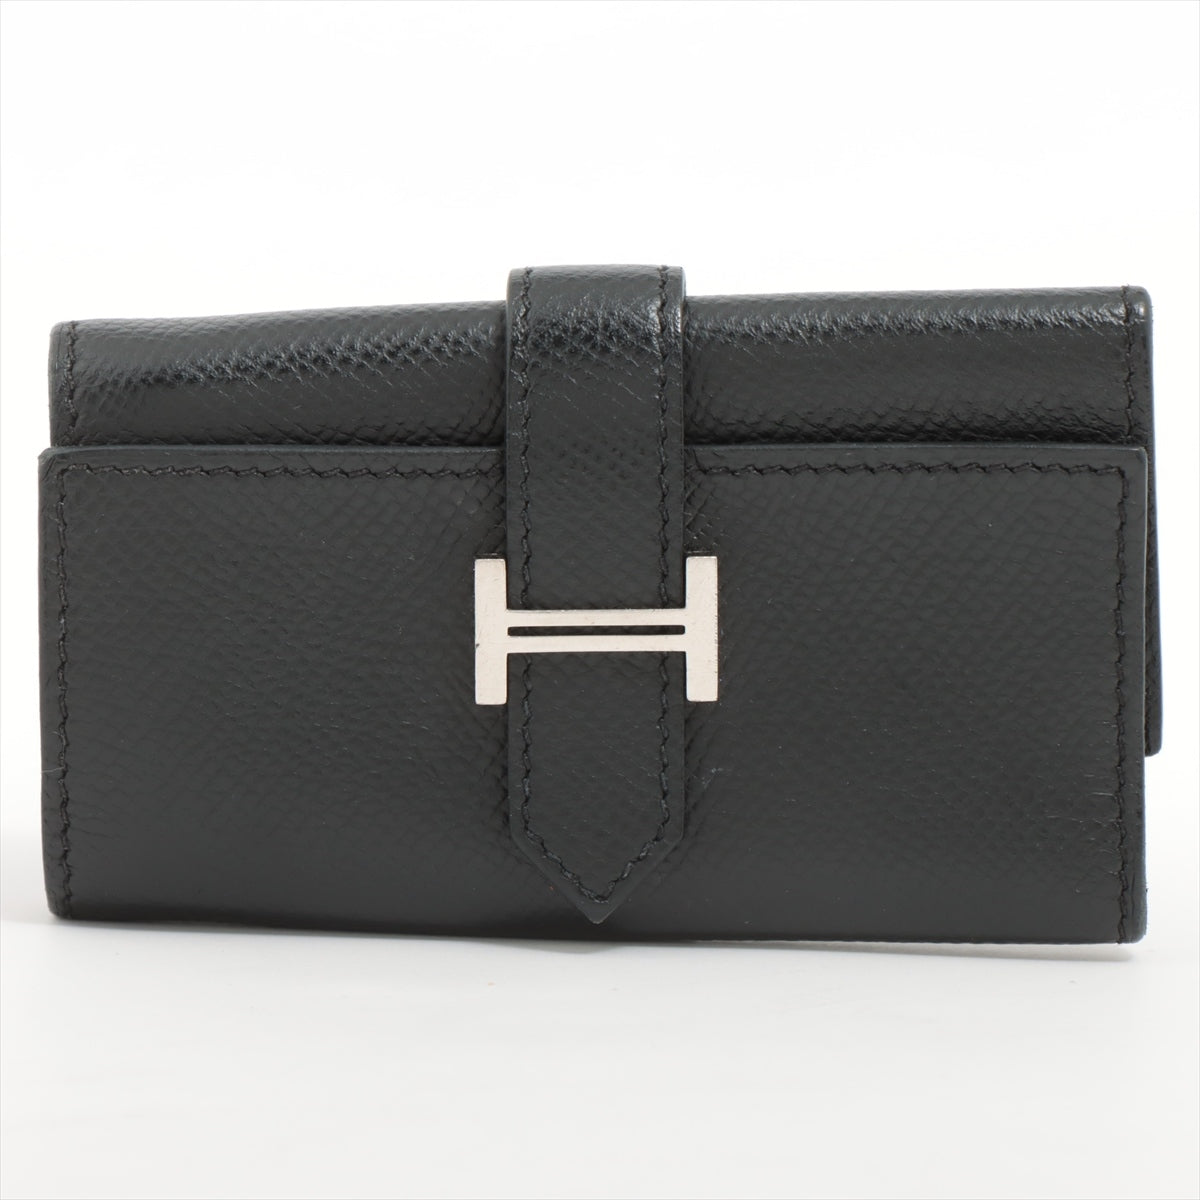 Hermès Bearn Veau Epsom Key case Black Silver Metal fittings Z: 2021